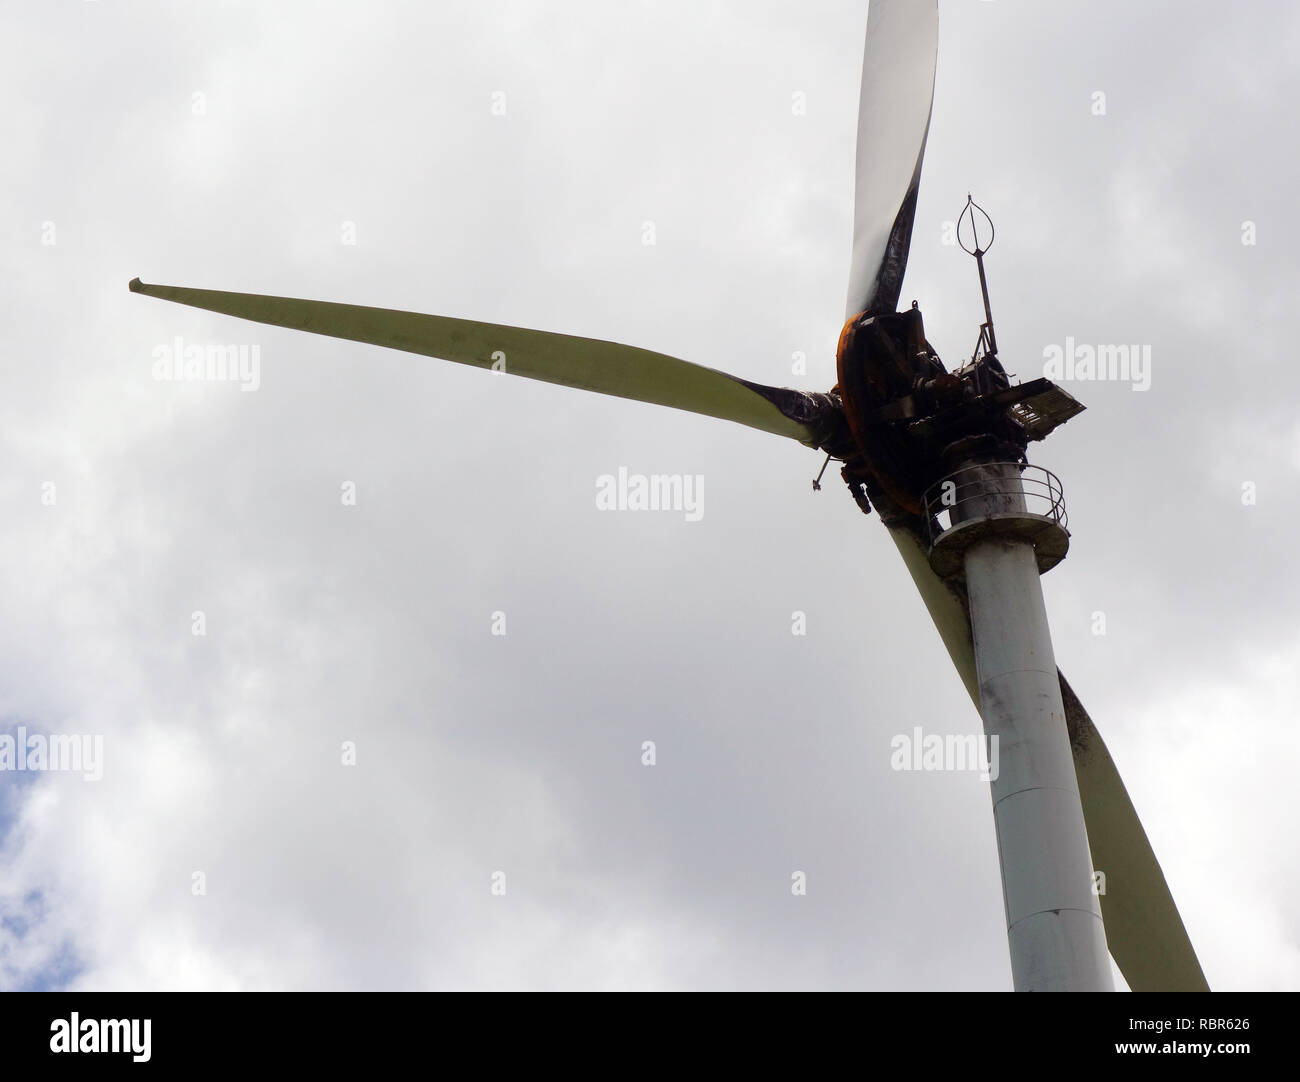 Windturbine, in der Gondel Feuer gefangen hat, Windy Hill Wind Farm, in der Nähe von Ravenshoe, Queensland, Australien. Keine PR Stockfoto